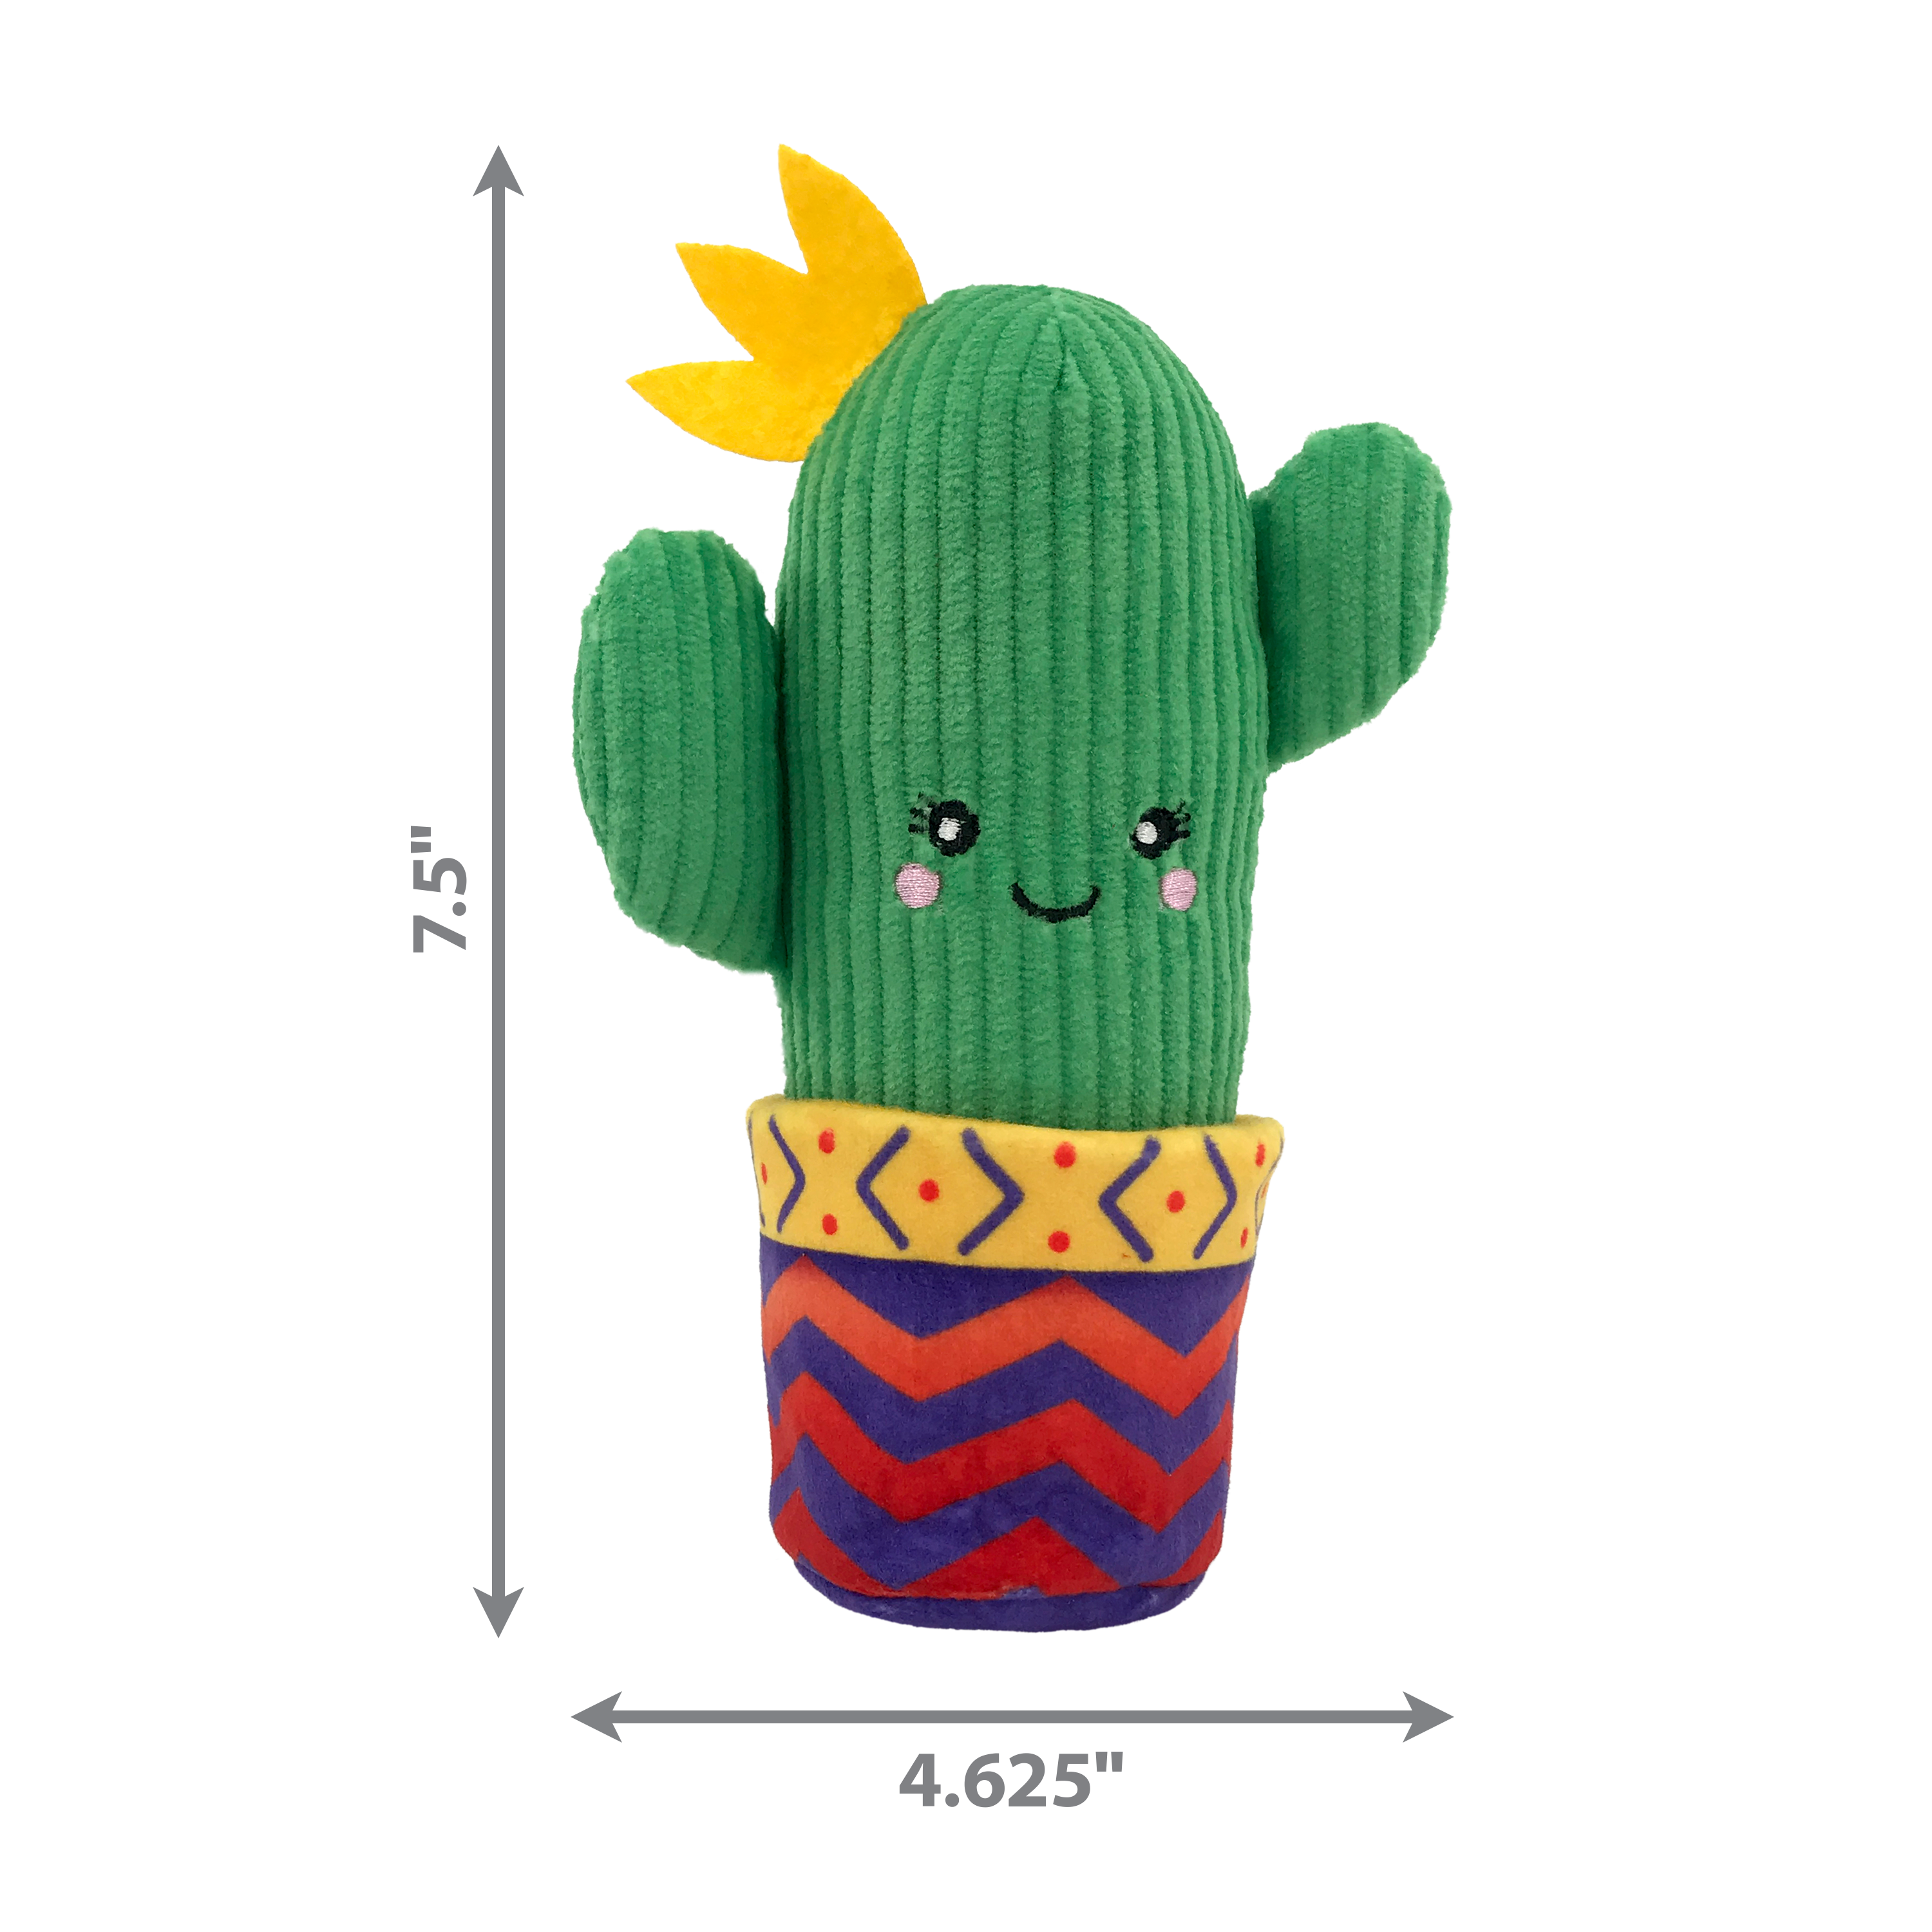 Kong Wrangler Cactus - Juguetes para Gatos